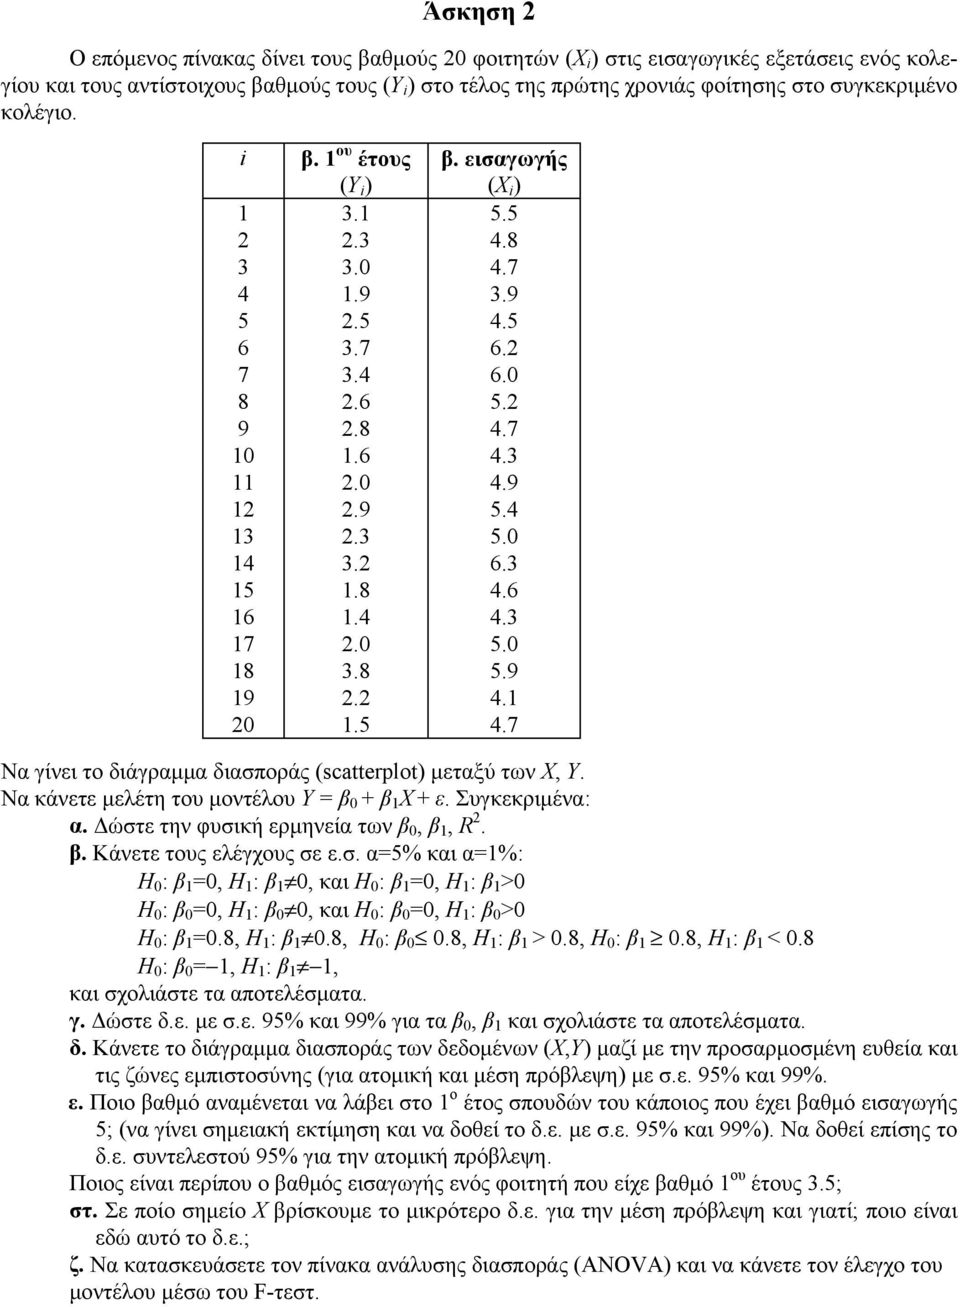 Να κάνετε μελέτη του μοντέλου Υ = β + β Χ + ε. Συγκεκριμένα: α. Δώστε την φυσική ερμηνεία των β, β, R. β. Κάνετε τους ελέγχους σε ε.σ. α=5% και α=%: Η : β =, Η : β, και Η : β =, Η : β > Η : β =, Η : β, και Η : β =, Η : β > Η : β =.